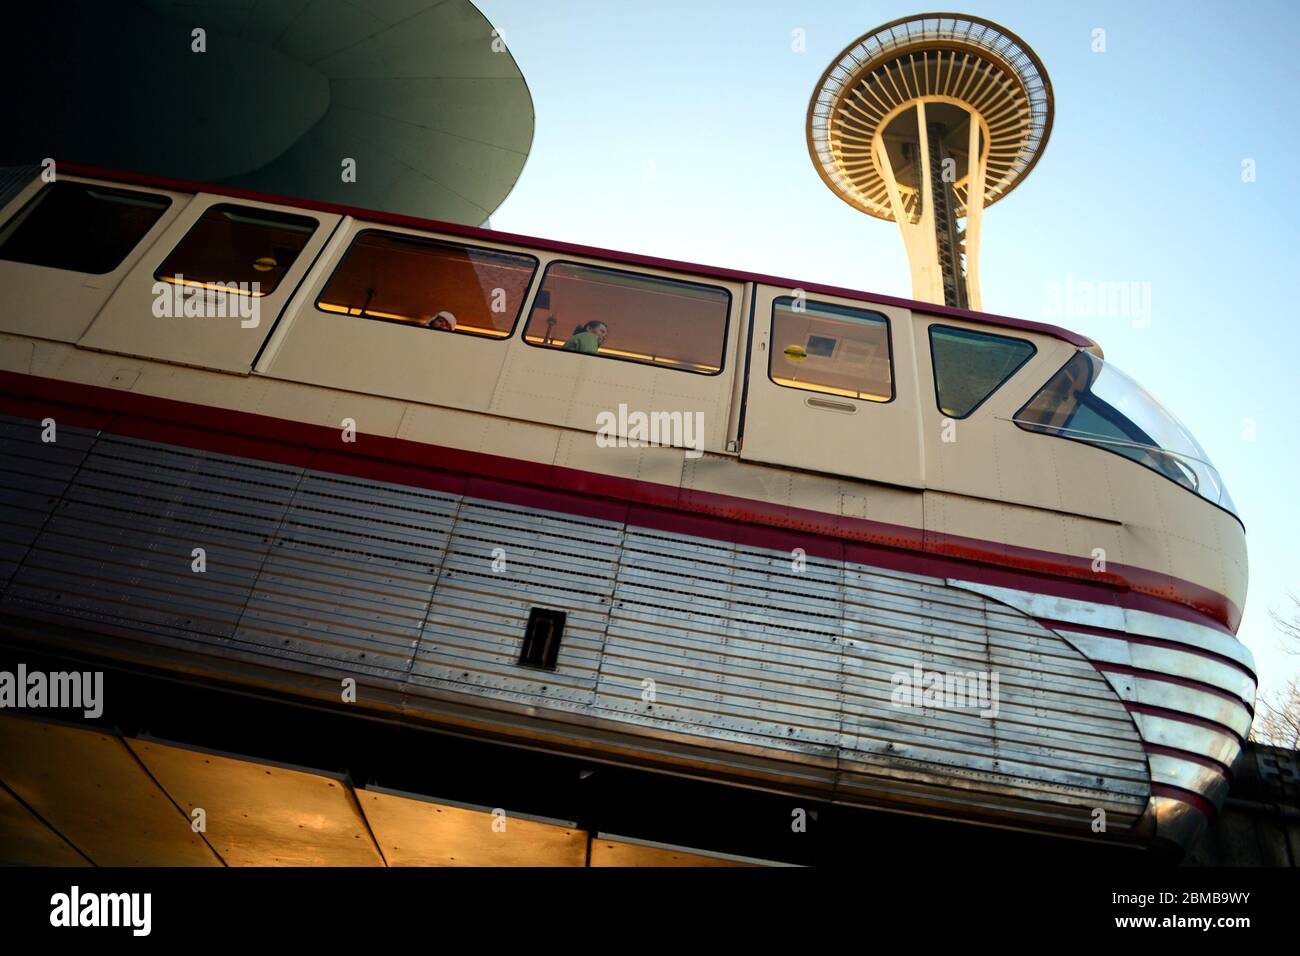 Seattle 2013, EMP, Experience Music Project un musée de musique et de scification conçu par l'archevêche Frank Ghery. Voici le détail de l'entrée monorail Banque D'Images